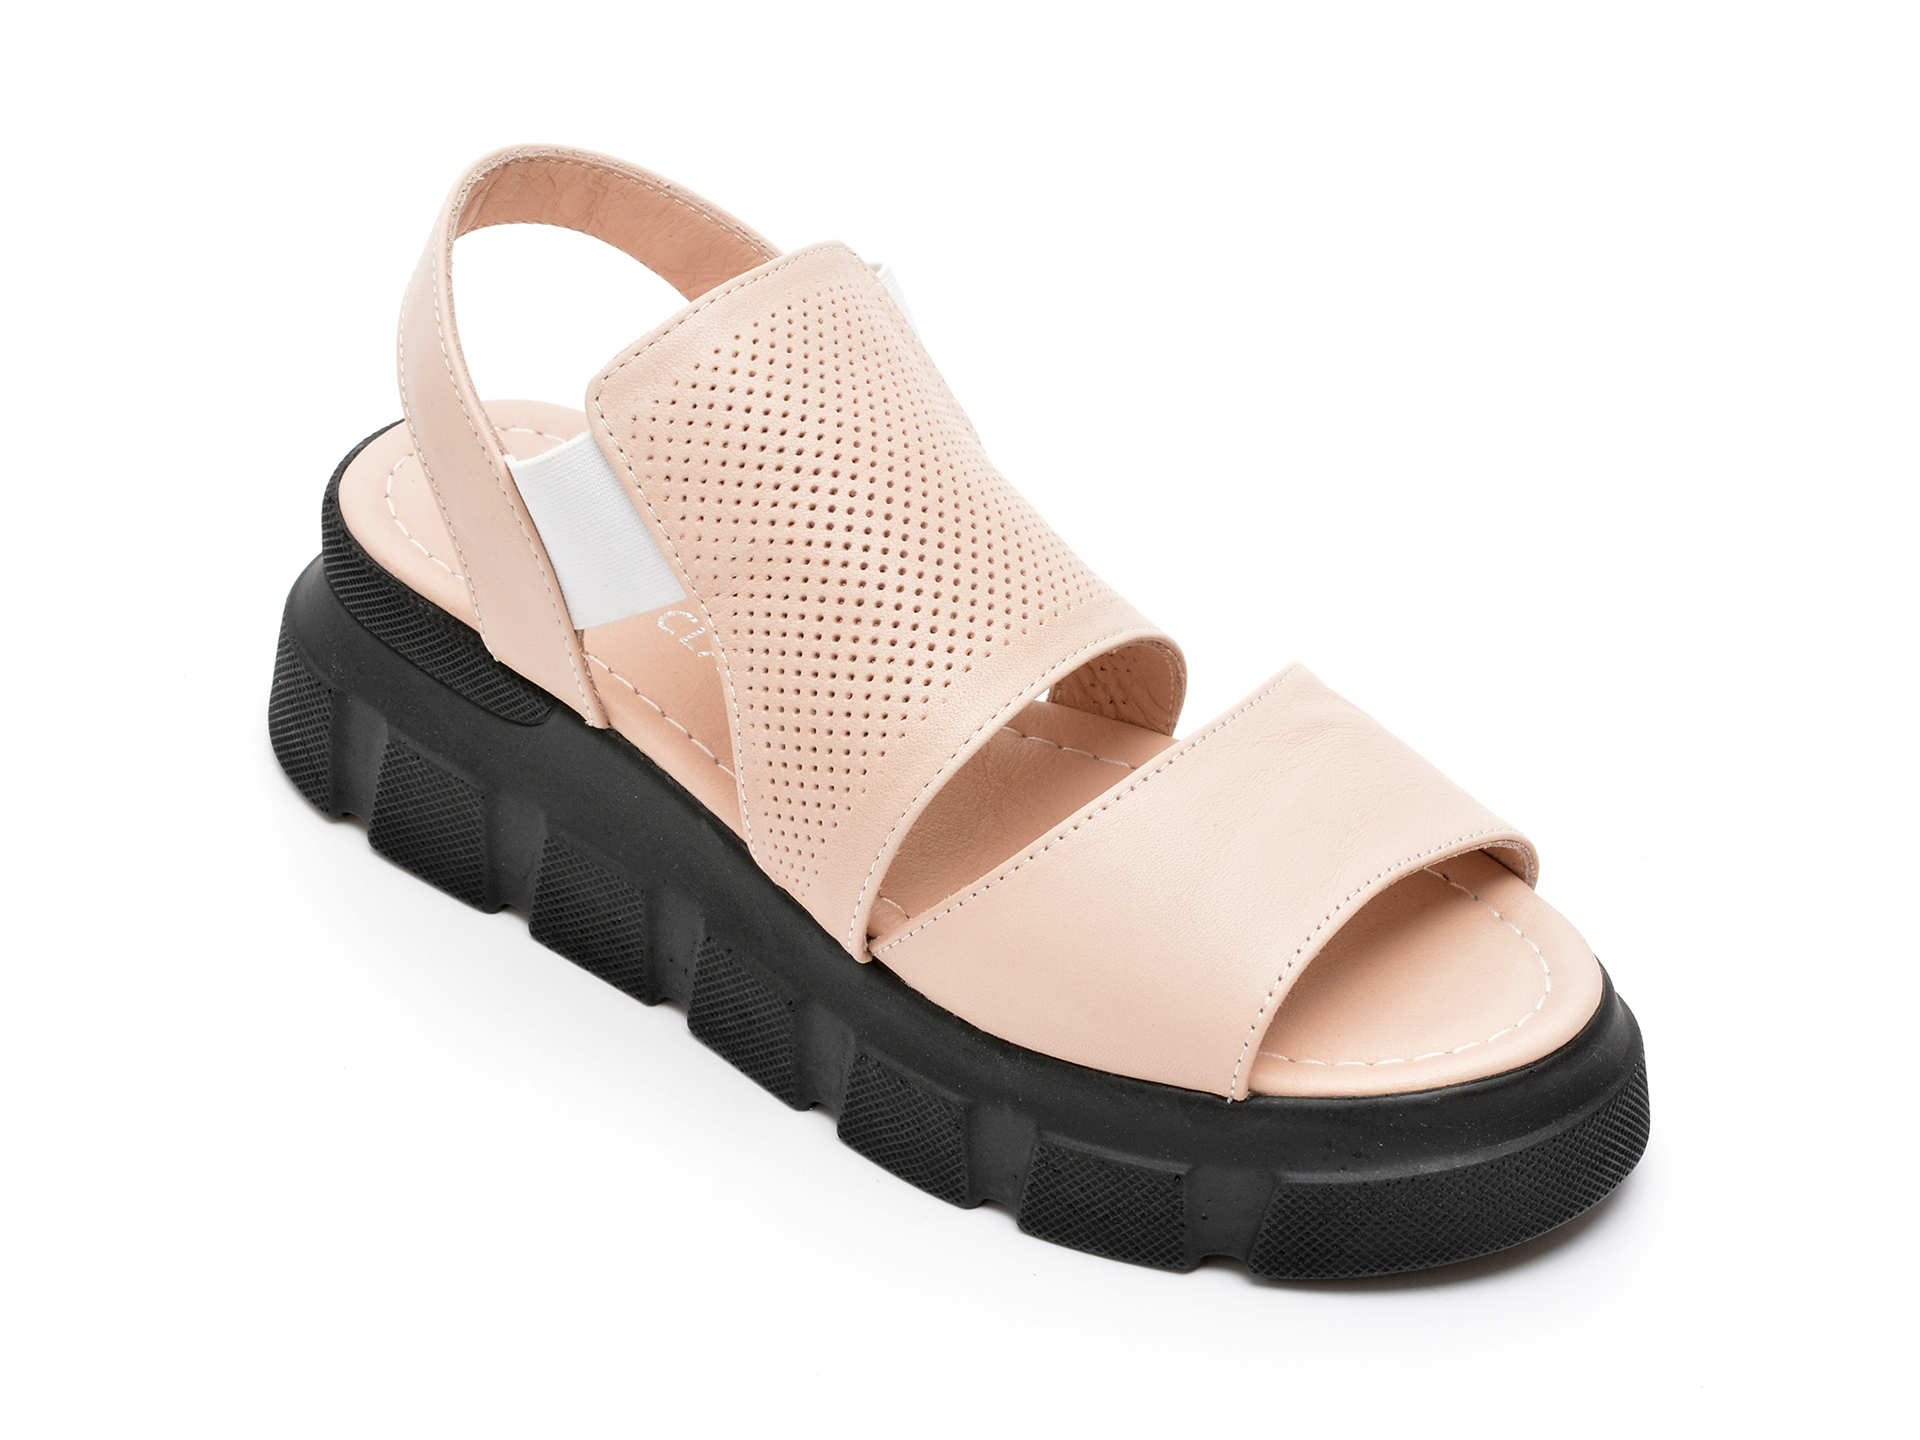 Sandale HK DIVA CLAP nude, 4393, din piele naturala /femei/sandale imagine noua